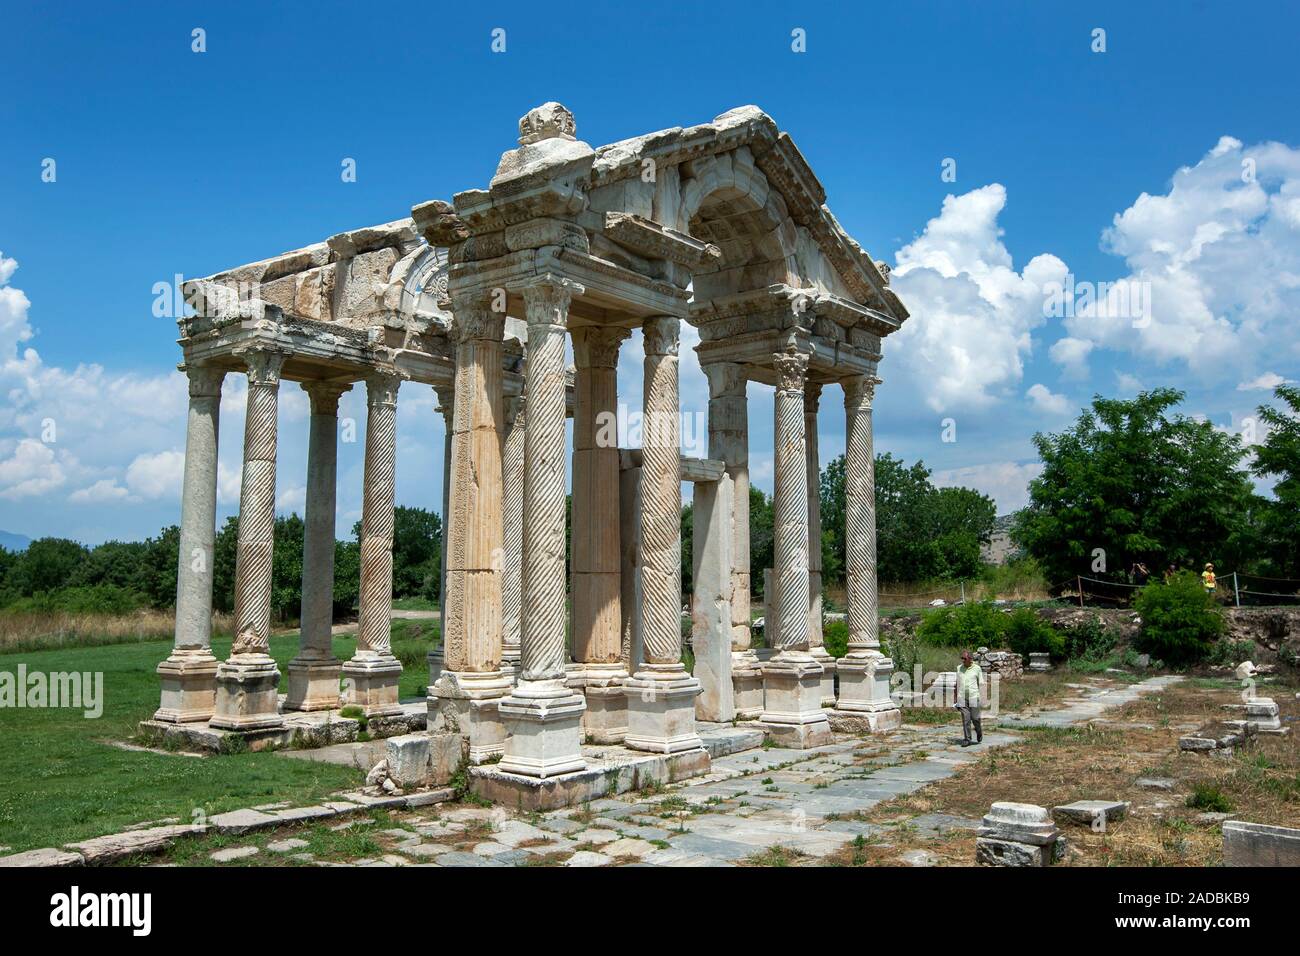 Le rovine del Tetrapylon o gateway monumentale presso l'antico sito di Aphrodisias in Turchia. Foto Stock